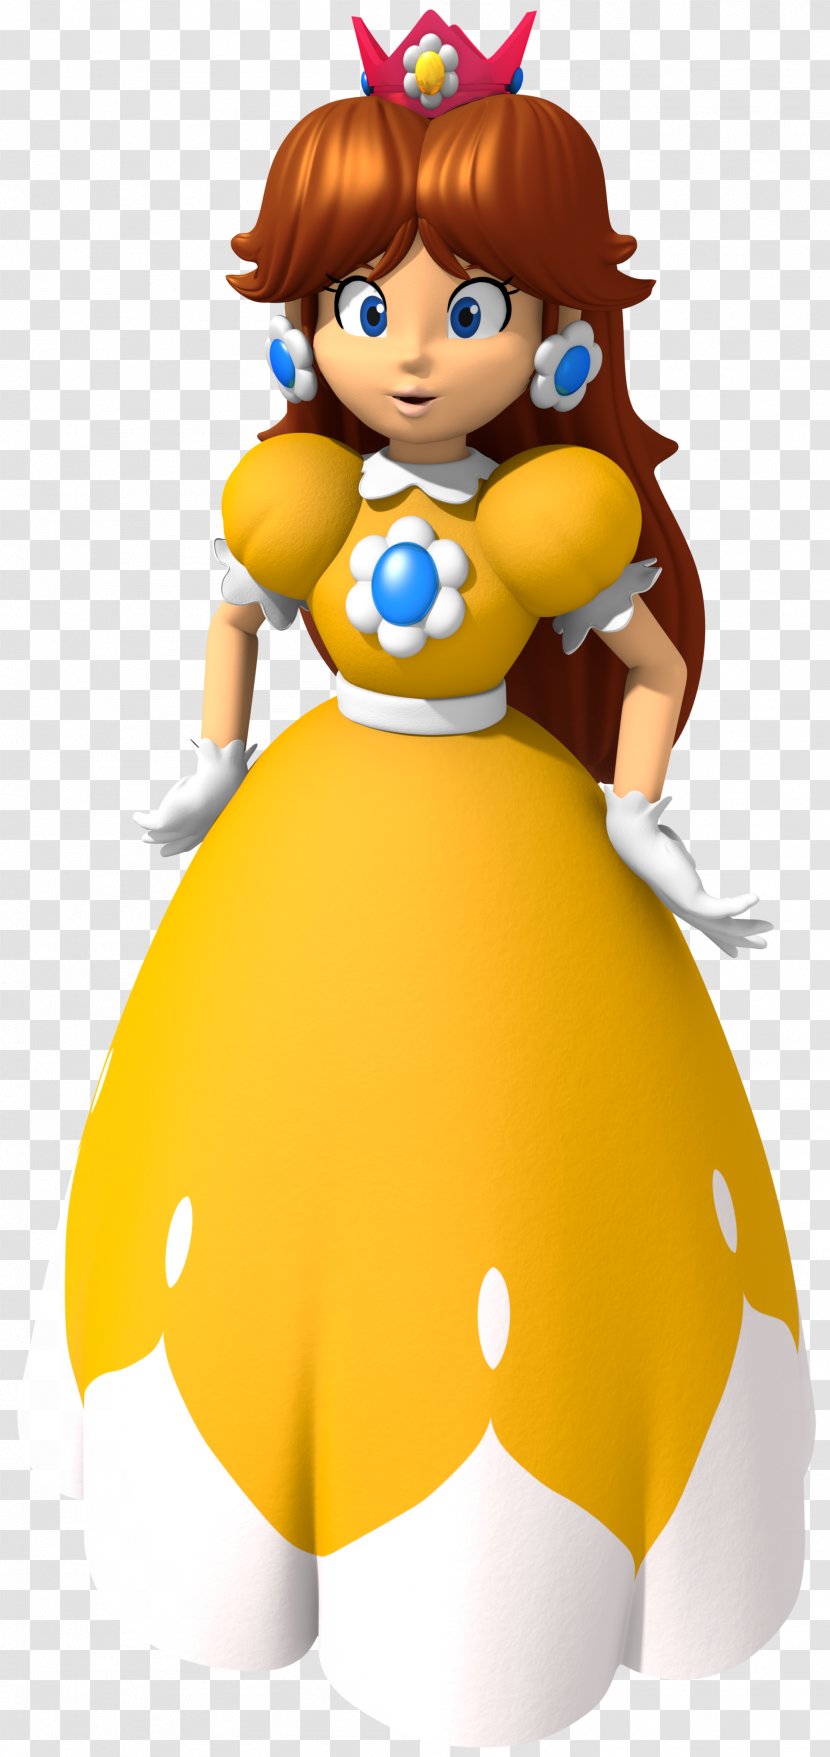 Princess Daisy Peach Mario Bros. Party 8 Super Smash Melee - Land - Mushroom Cartoon Transparent PNG